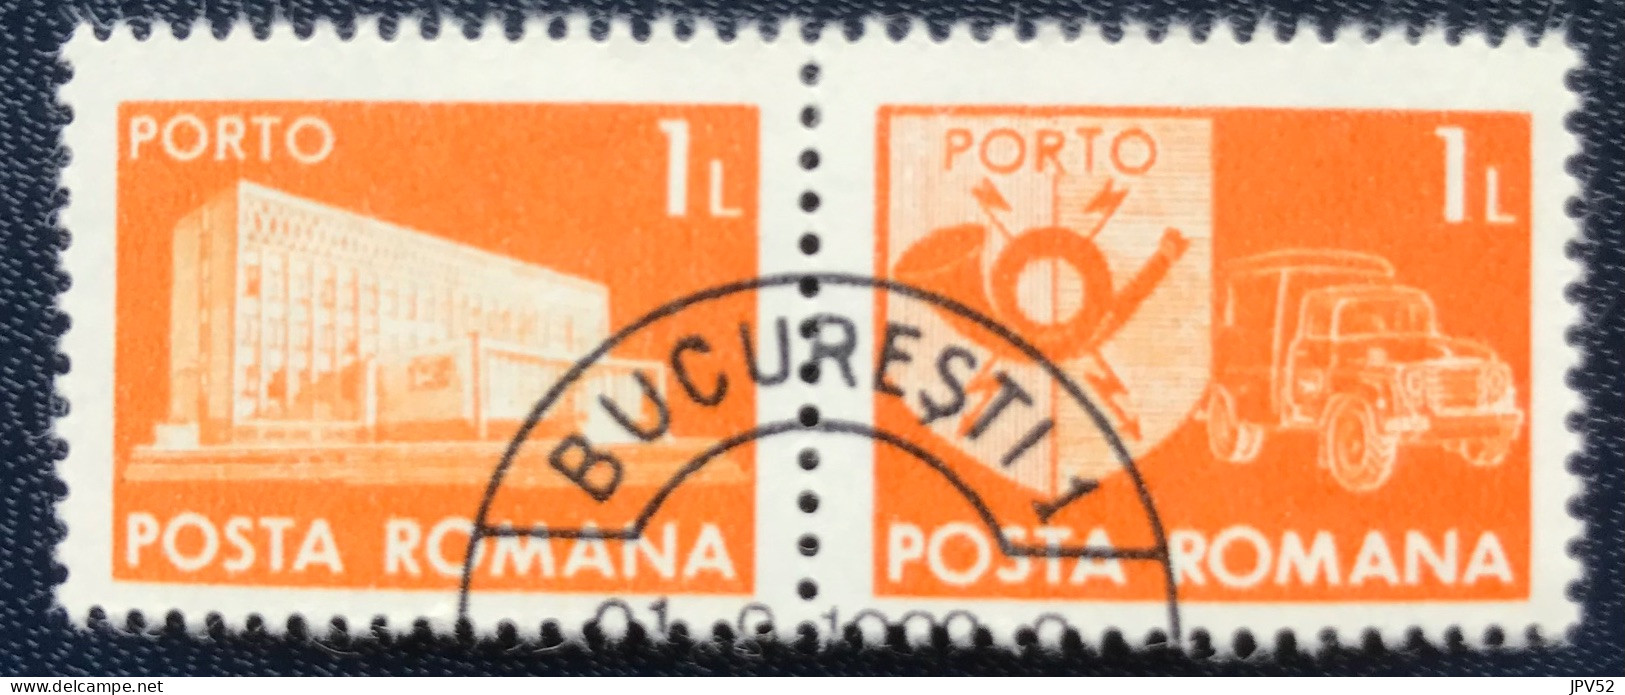 Romana - Roemenië - C14/54 - 1974 - (°)used - Michel 124 - Postkantoor & Postembleem & Postvoertuig - BUCURESTI - Postage Due